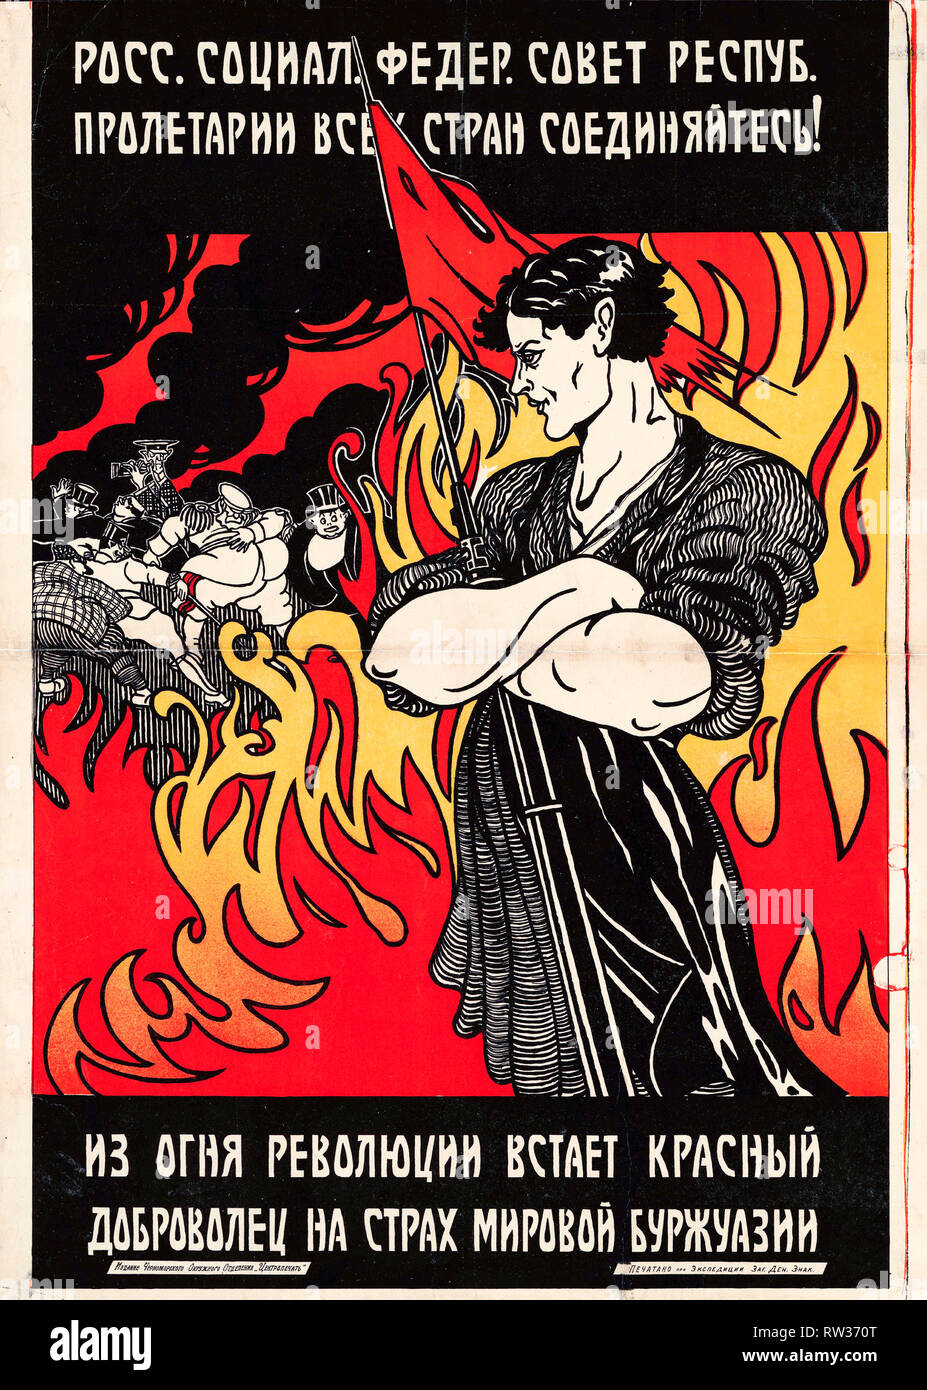 Affiche de propagande soviétique - un bénévole rouge s'élève de l'incendie de la révolution à la crainte de la bourgeoisie mondiale, 1920 Banque D'Images